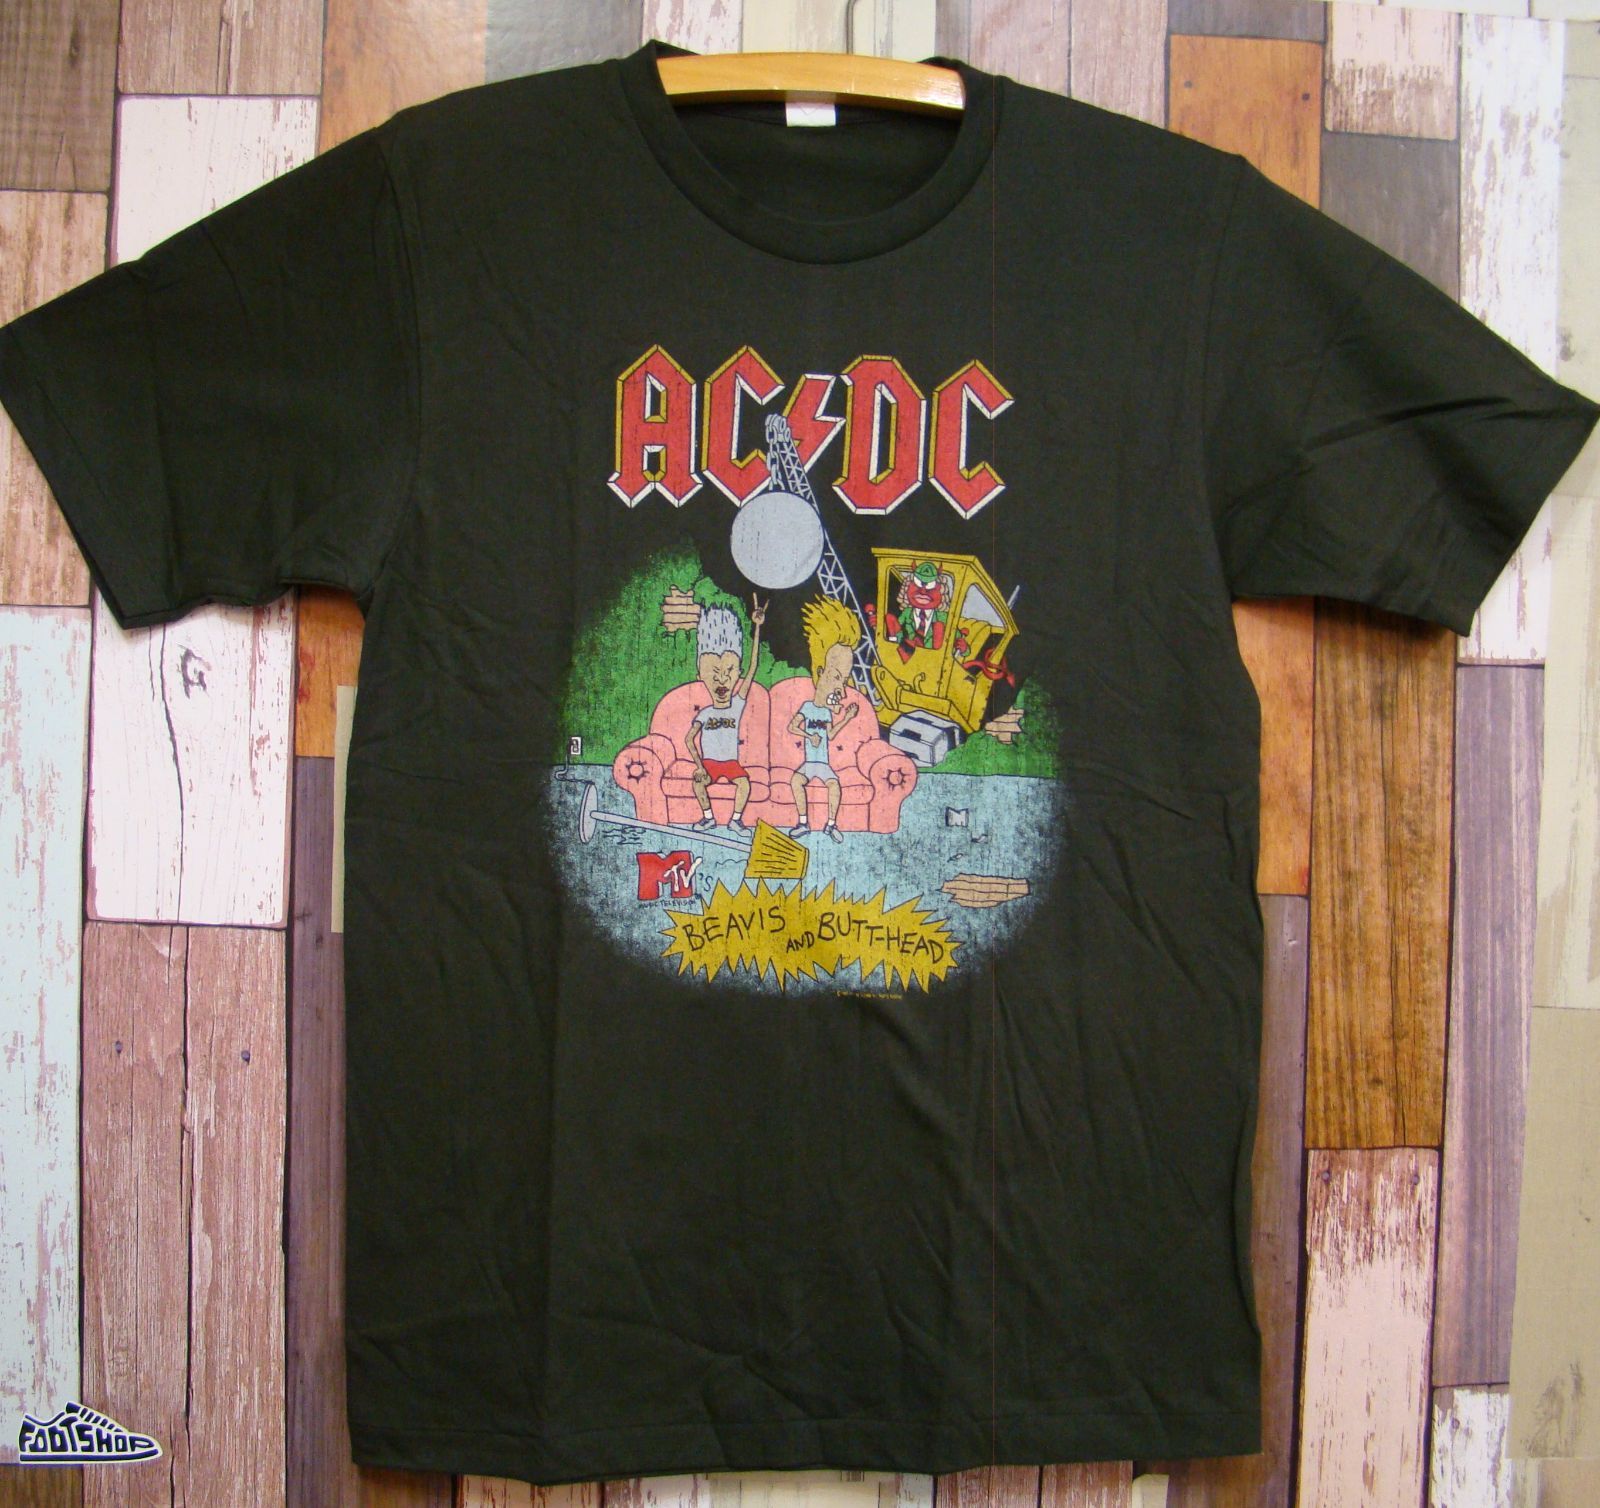 AC/DC 黒① Tシャツ XL アンガス・ヤング